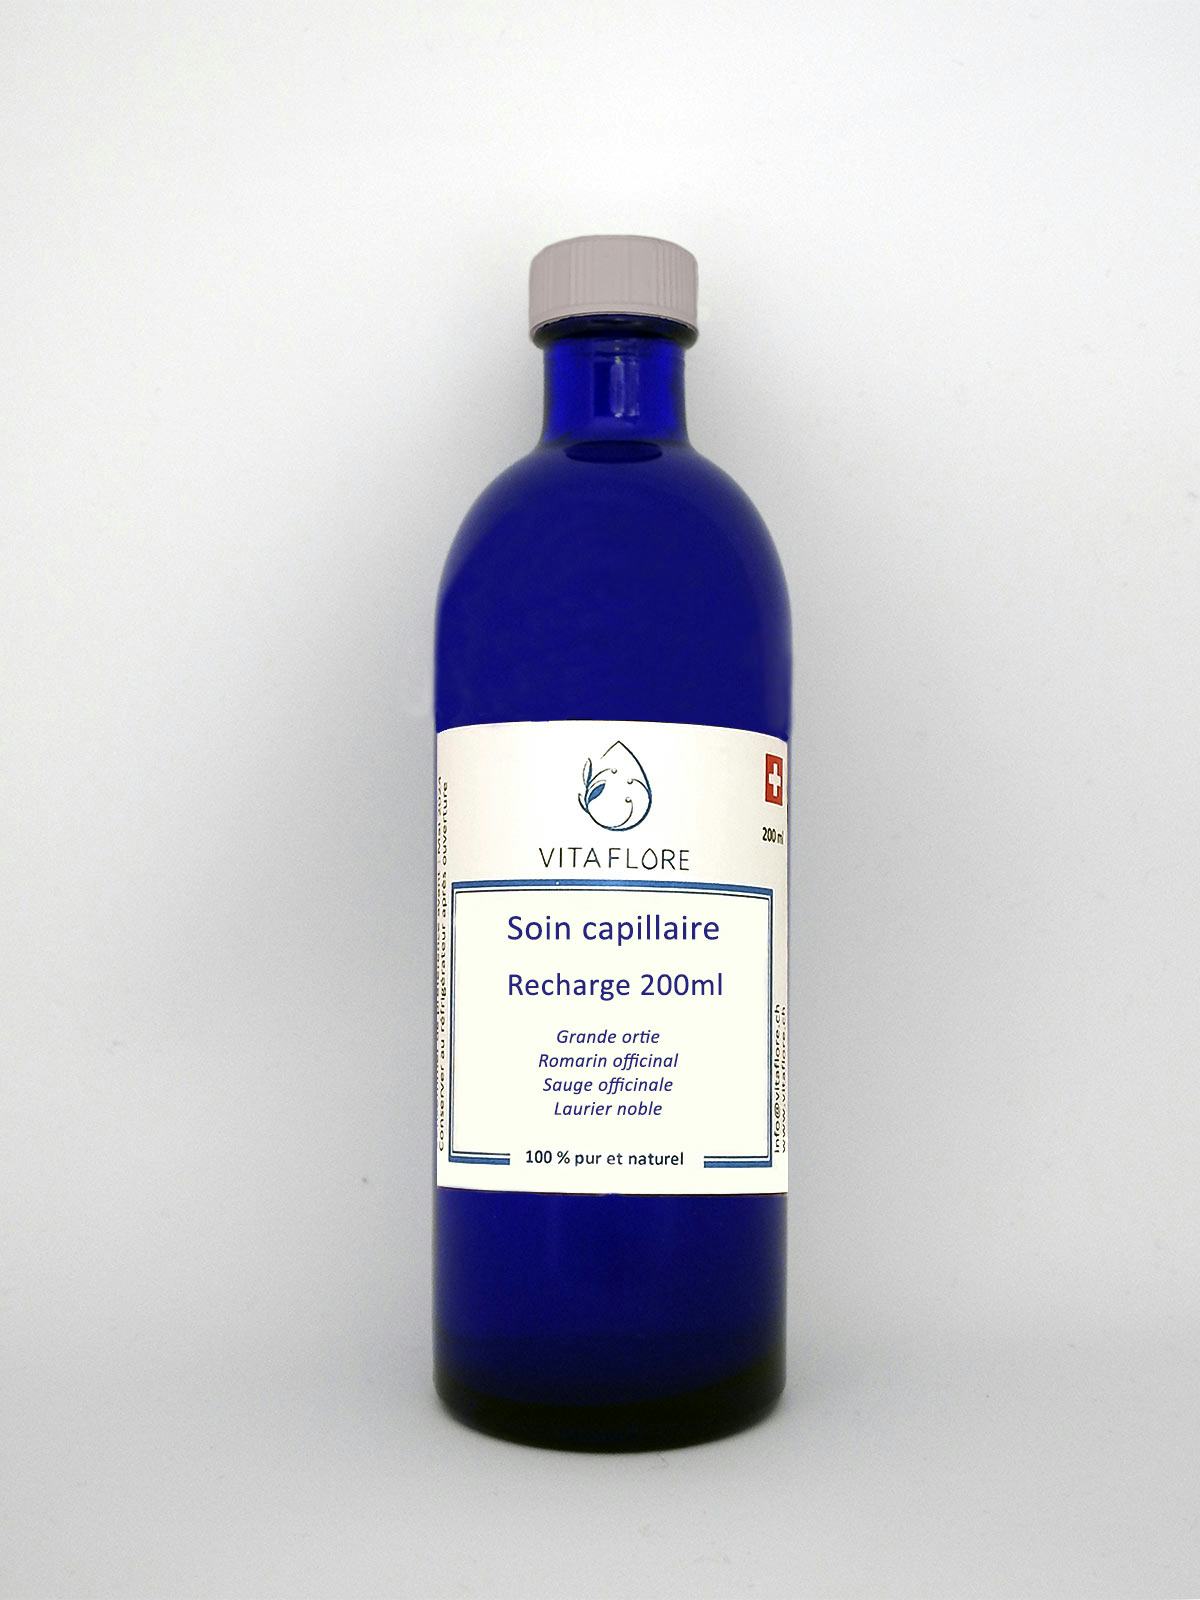 Synergie d’hydrolats – Soin capillaire – recharge 200ml, prodotto artigianale per la vendita diretta in Svizzera